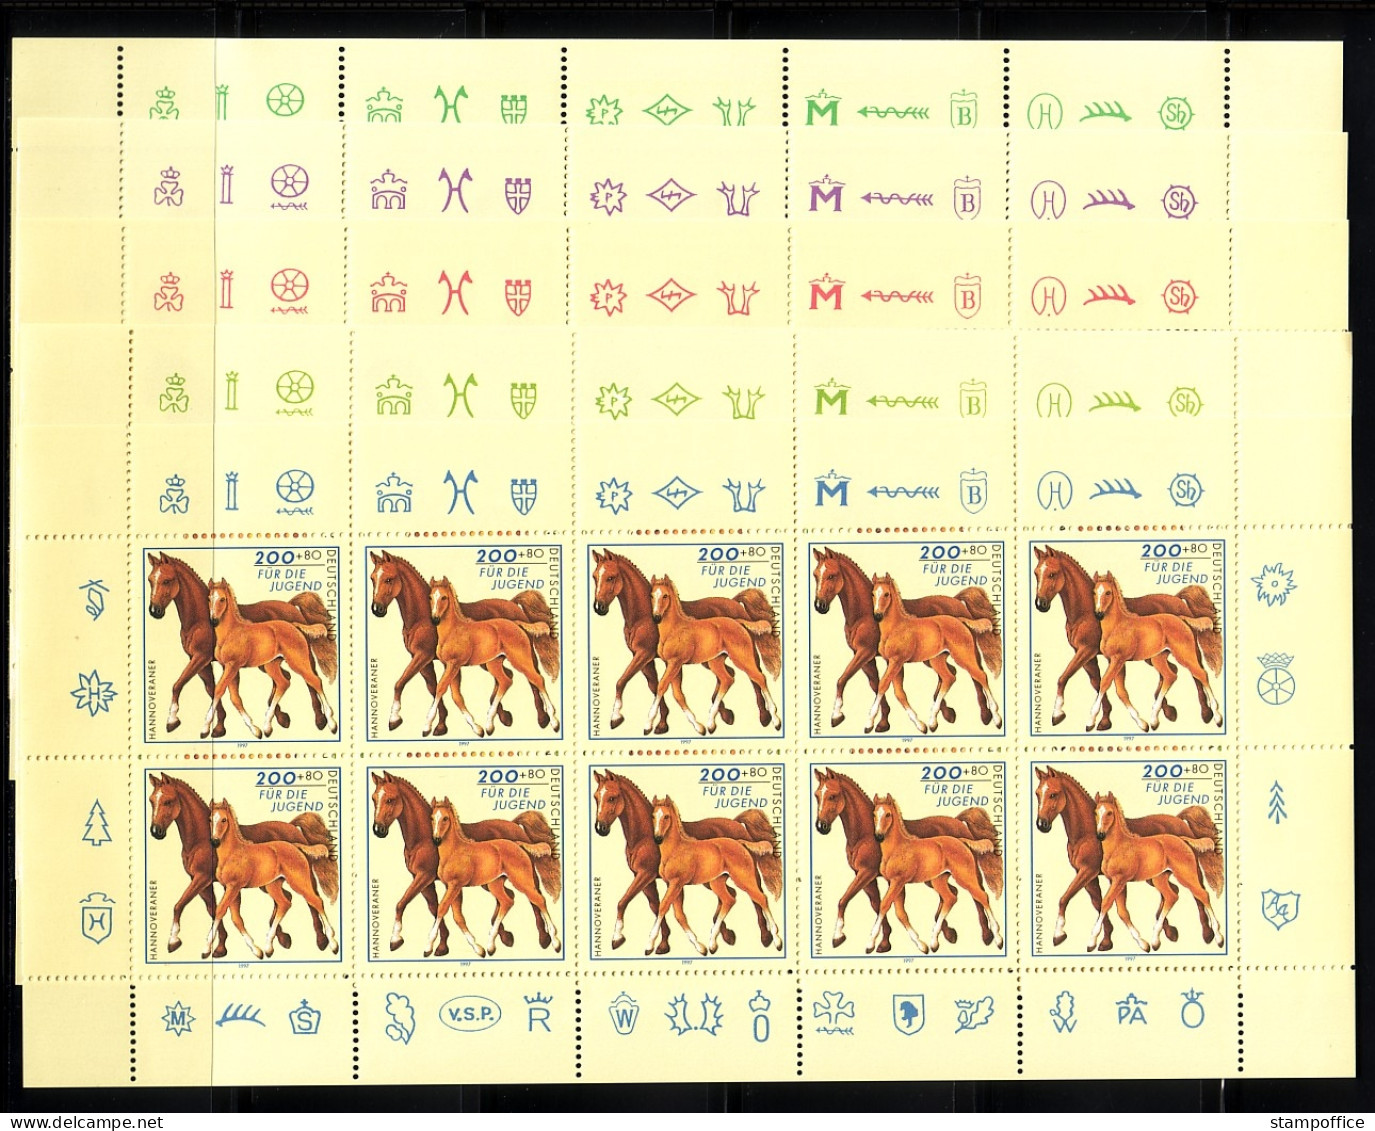 DEUTSCHLAND MI-NR. 1920-1924 POSTFRISCH(MINT) KLEINBOGENSATZ JUGEND 1997 PFERDERASSEN HAFLINGER PONY - Paarden